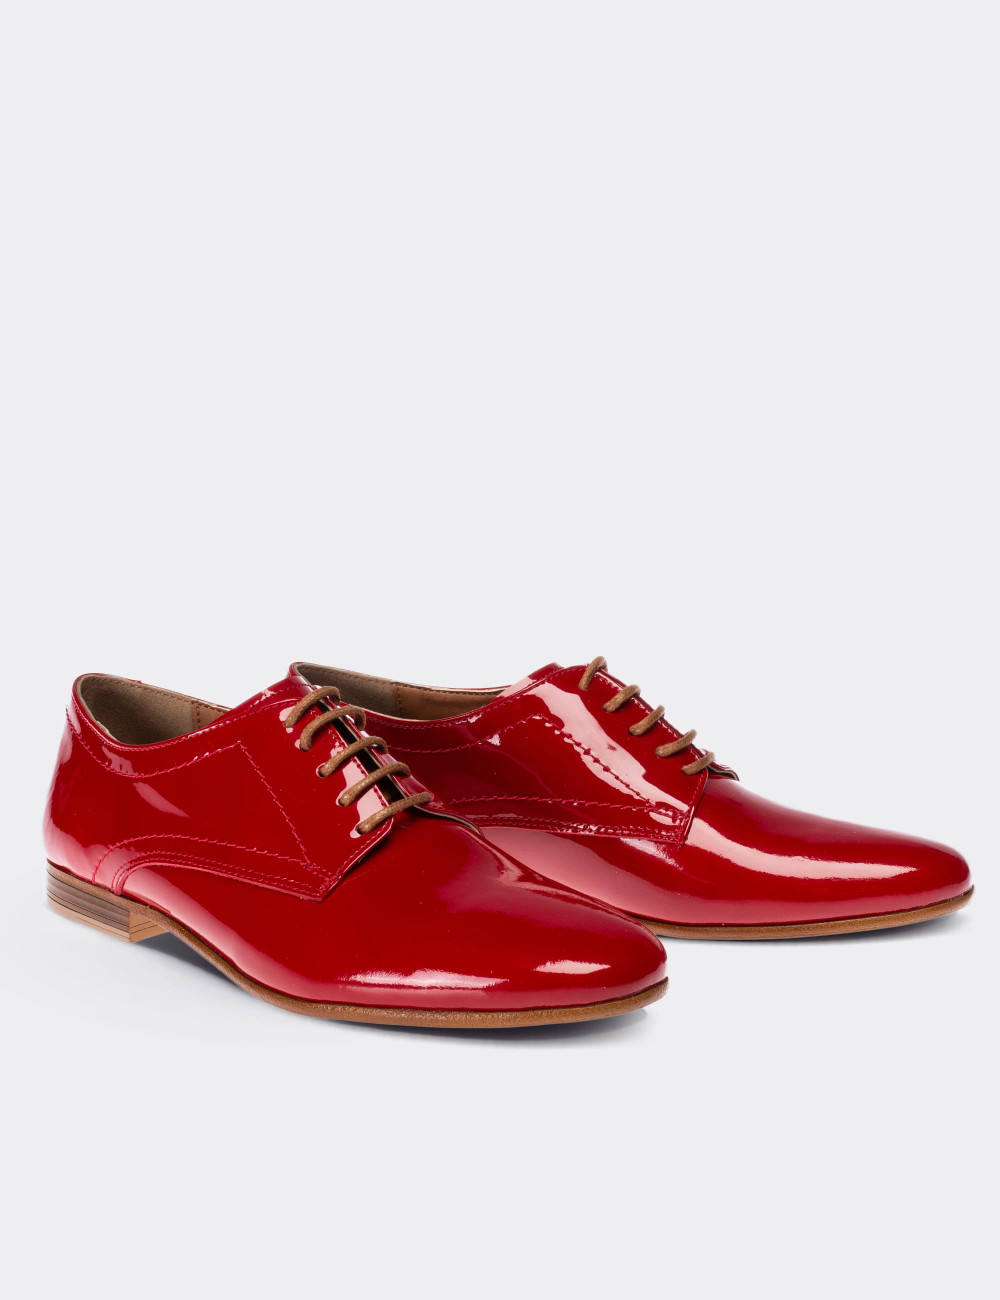 Hakiki Rugan Kırmızı Günlük Kadın Ayakkabı - 01430ZKRMC03